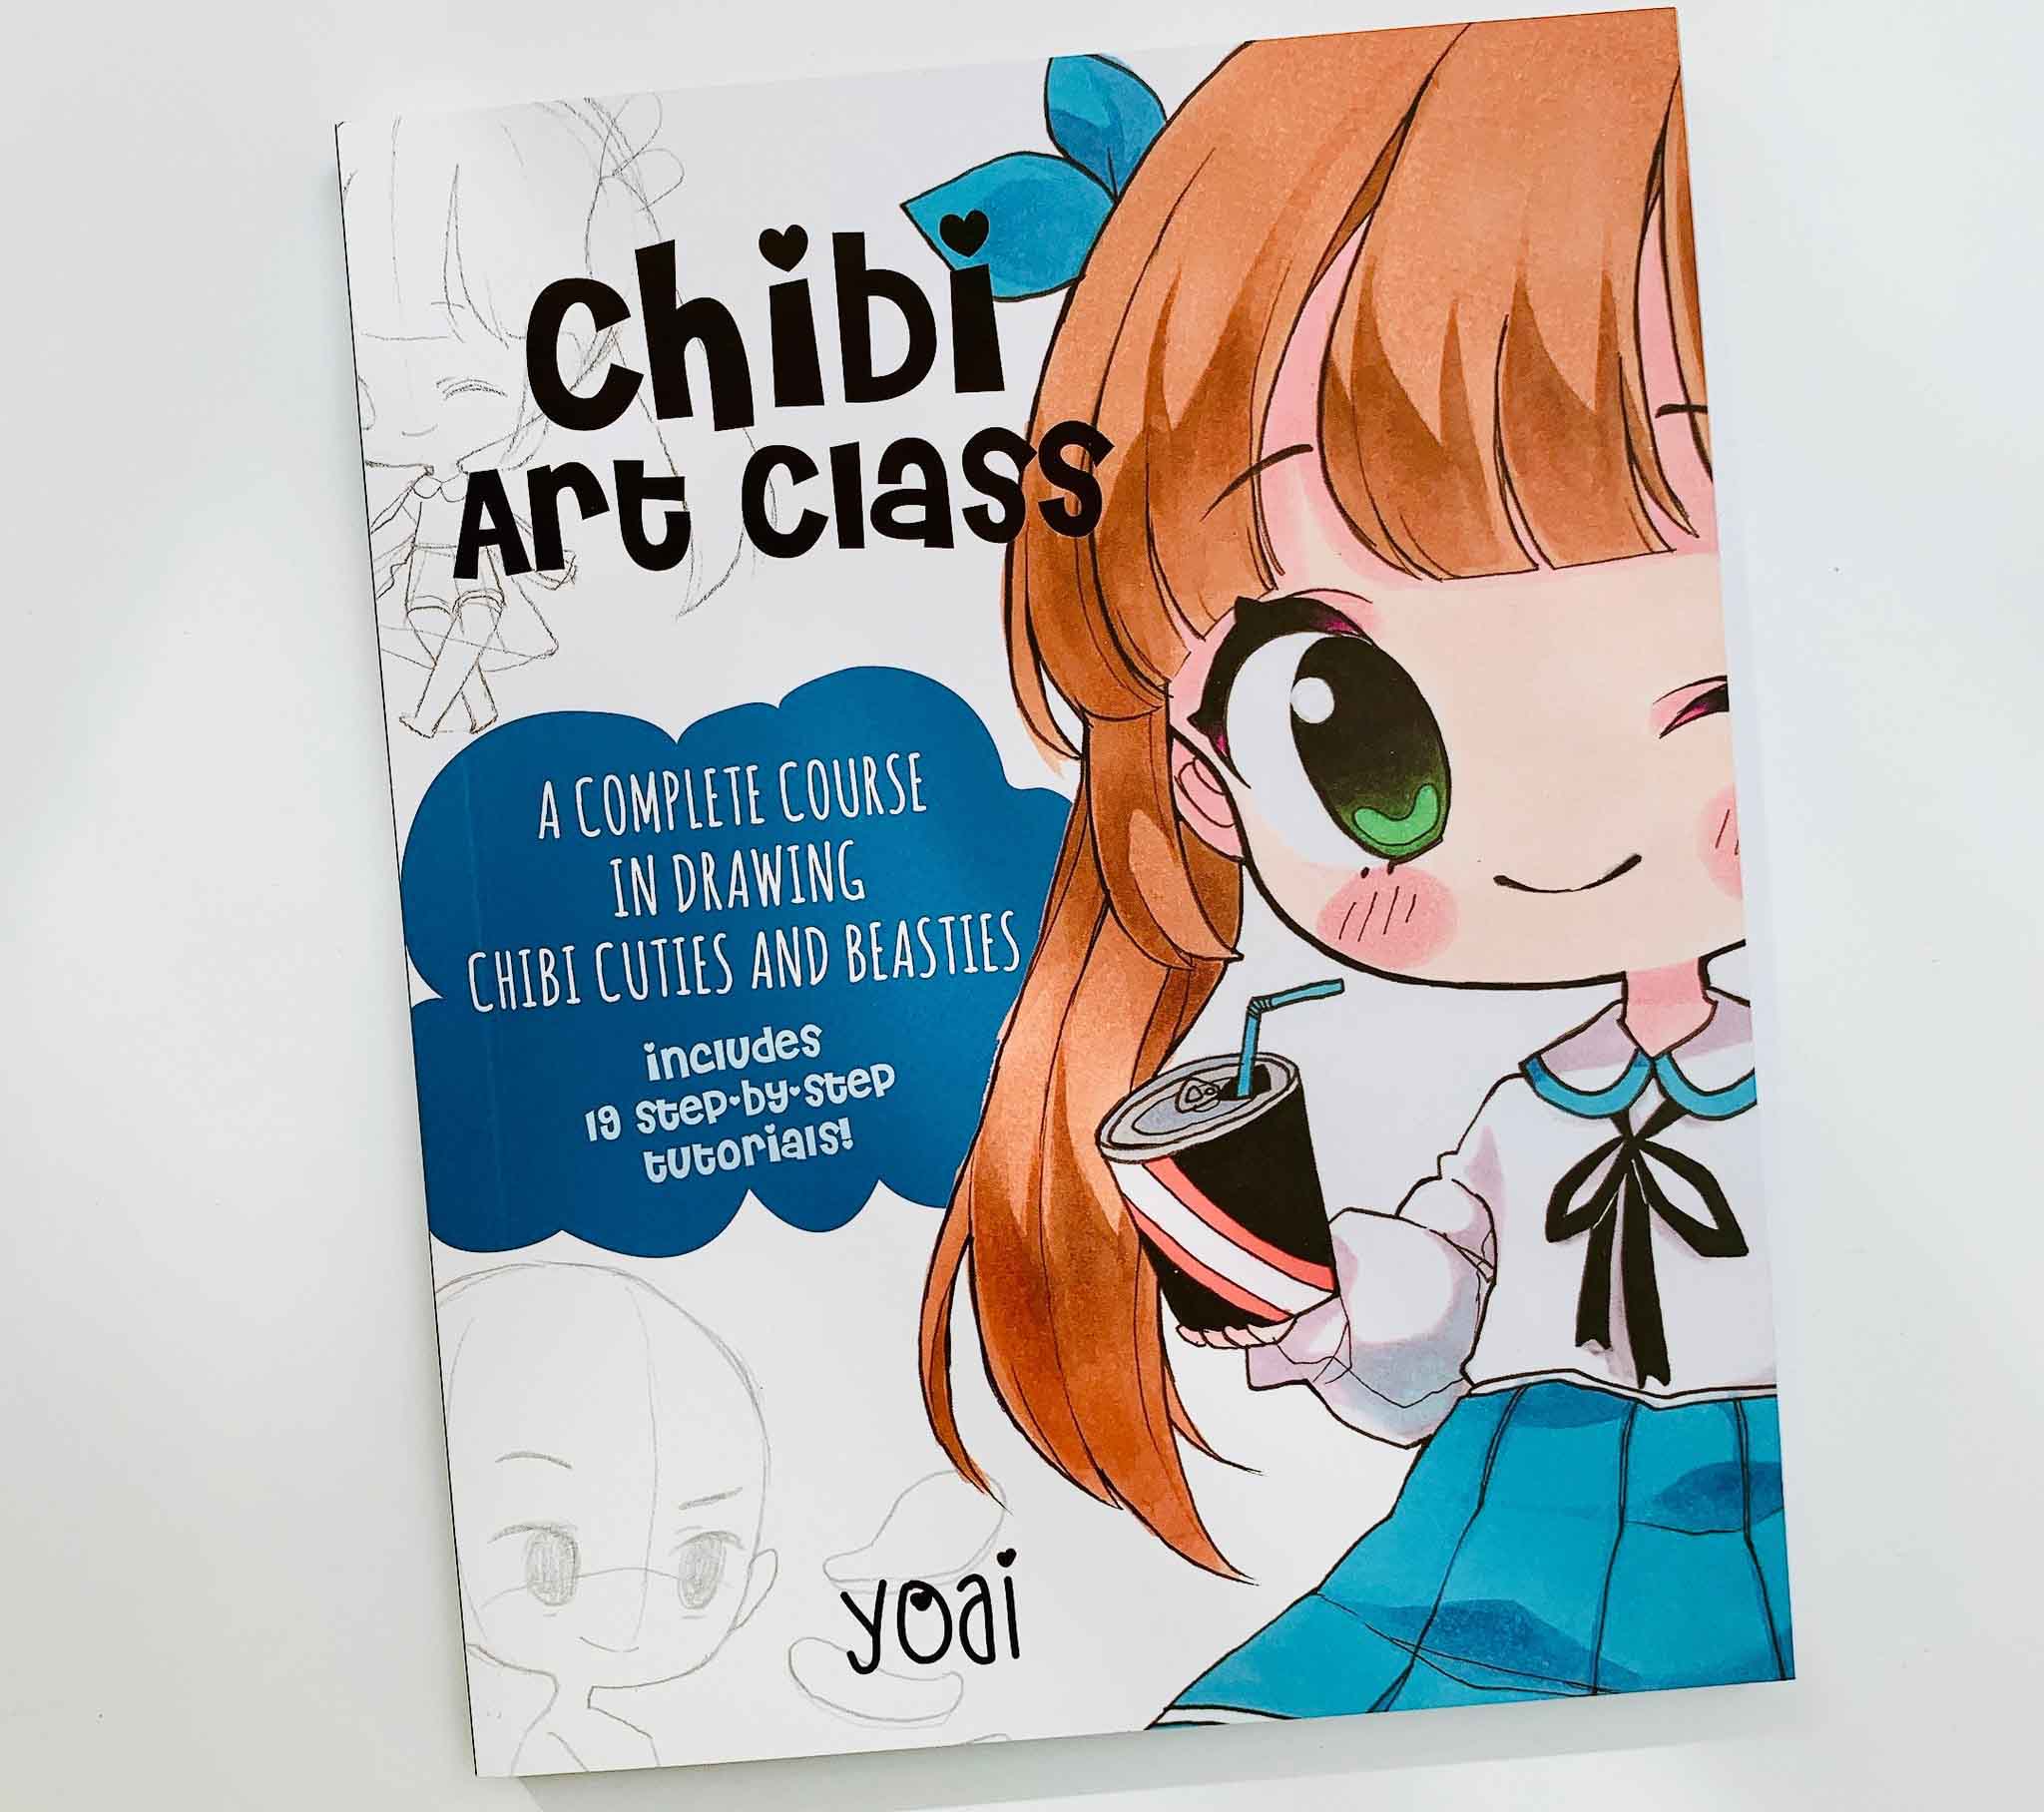 Chibi Art Class: Bạn yêu thích vẽ Chibi và muốn học cách vẽ chuẩn xác theo phong cách Nhật Bản? Khóa học dạy vẽ Chibi Art Class chính là điều bạn cần! Với sự hướng dẫn tận tâm của giảng viên và những bài tập thực hành cụ thể, bạn sẽ trở thành một họa sĩ Chibi tài năng.